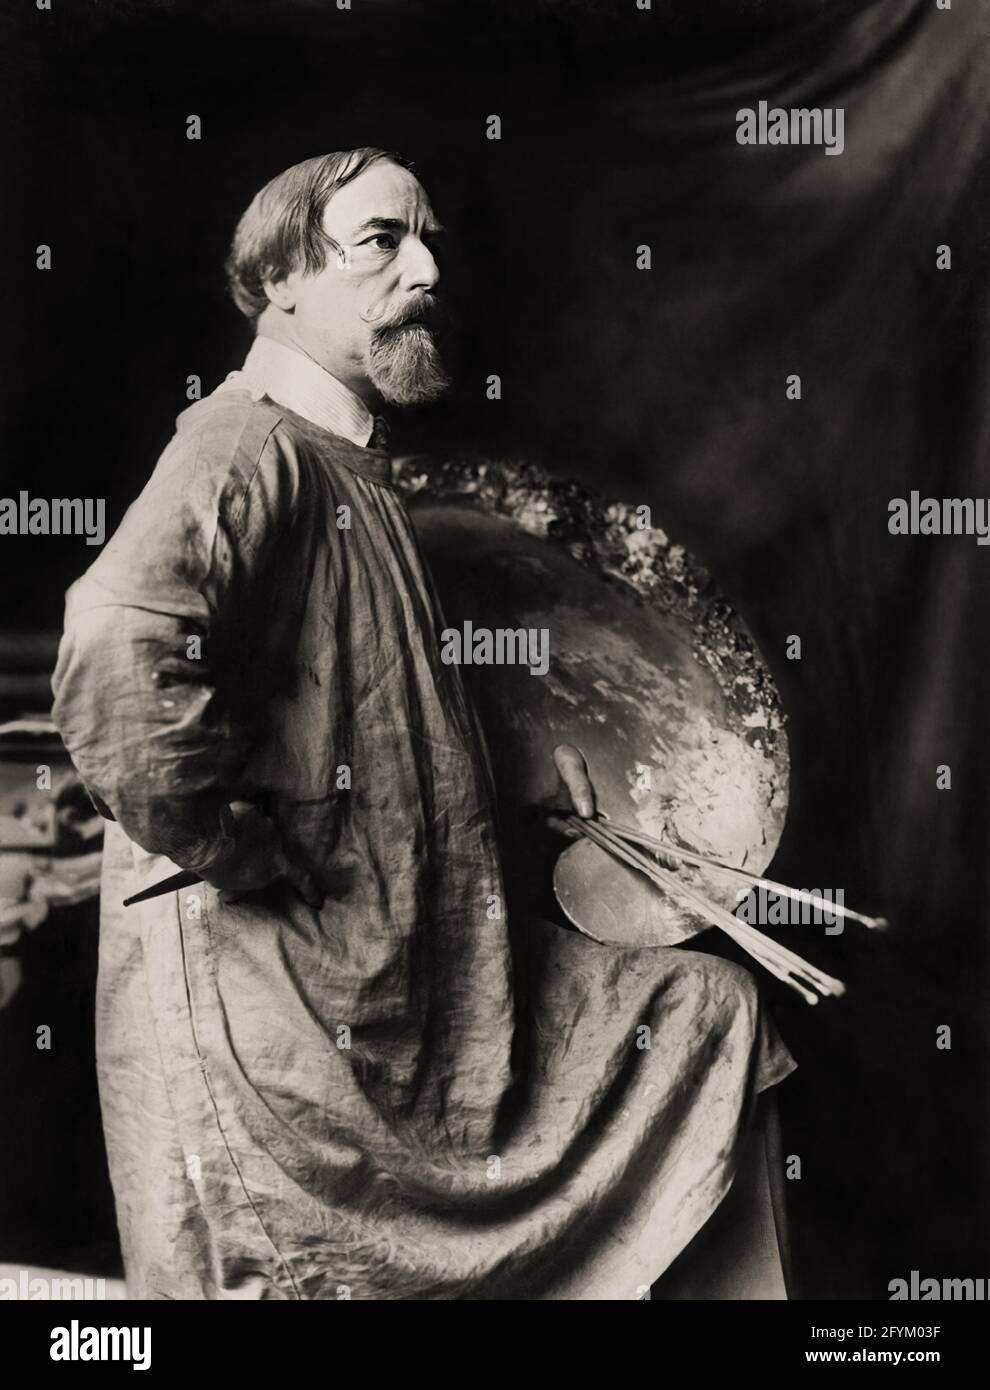 1930 ca, GRAN BRETAGNA : il celebre pittore britannico AUGUSTUS EDWIN JOHN ( 1878 - 1961 ) nel suo atelier . Foto di Carl Vandyk ( 1850 - 1931 ), Londra . - BELLE EPOQUE - PITTORE - pitTURA -ARTE - ARTI - ritratto - barba - profilo - palette - tavolozza e pennelli --- Archivio GBB Foto Stock